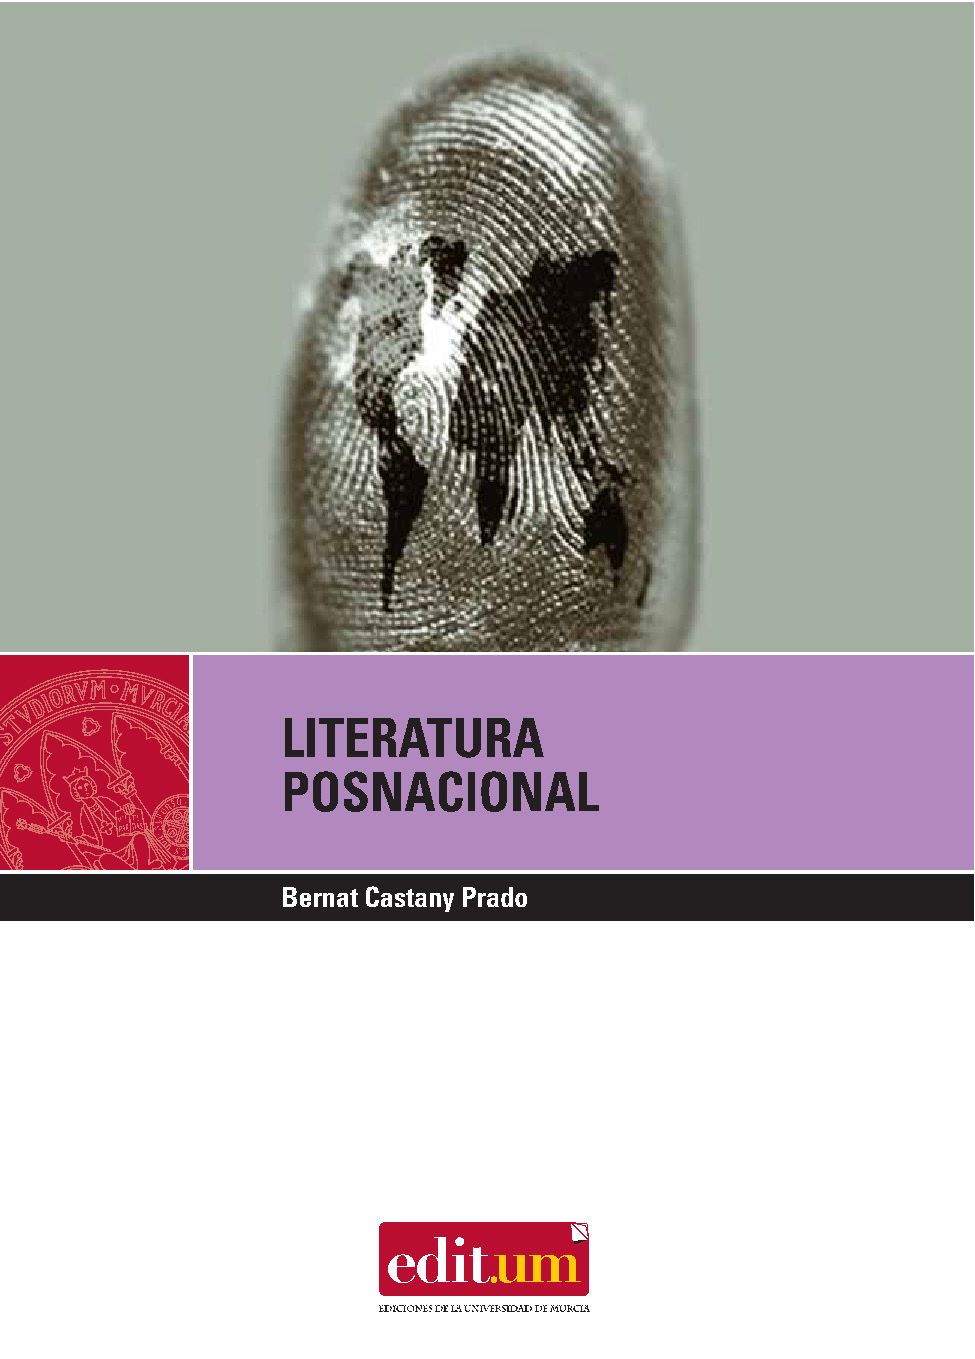 Imagen de portada del libro Literatura posnacional